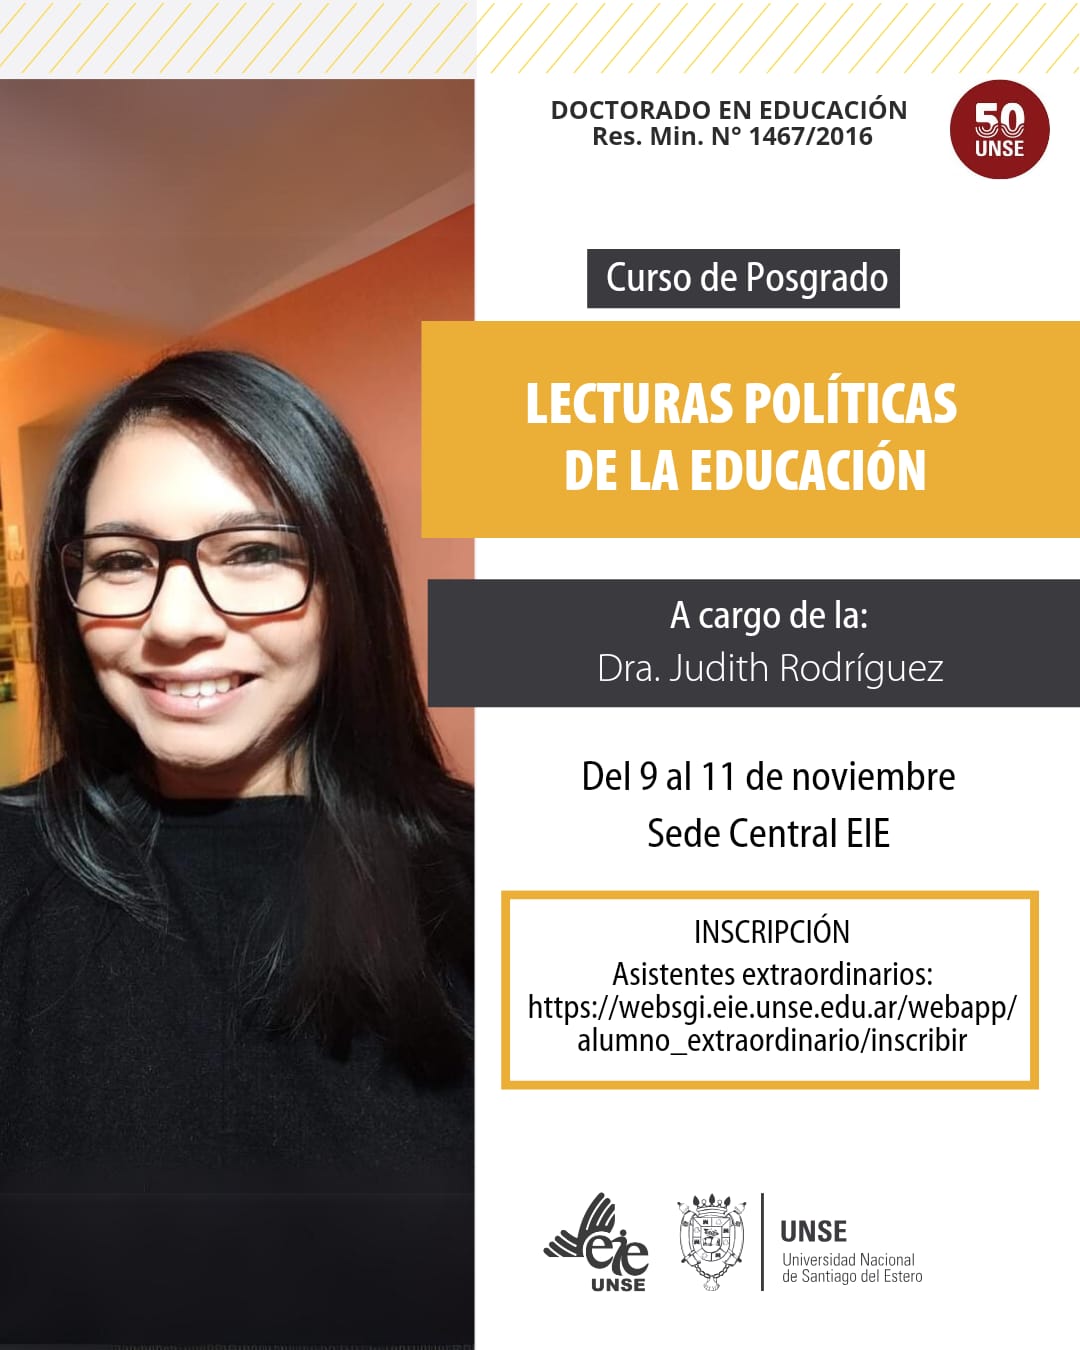 Curso de Posgrado "Lecturas políticas de la educación"